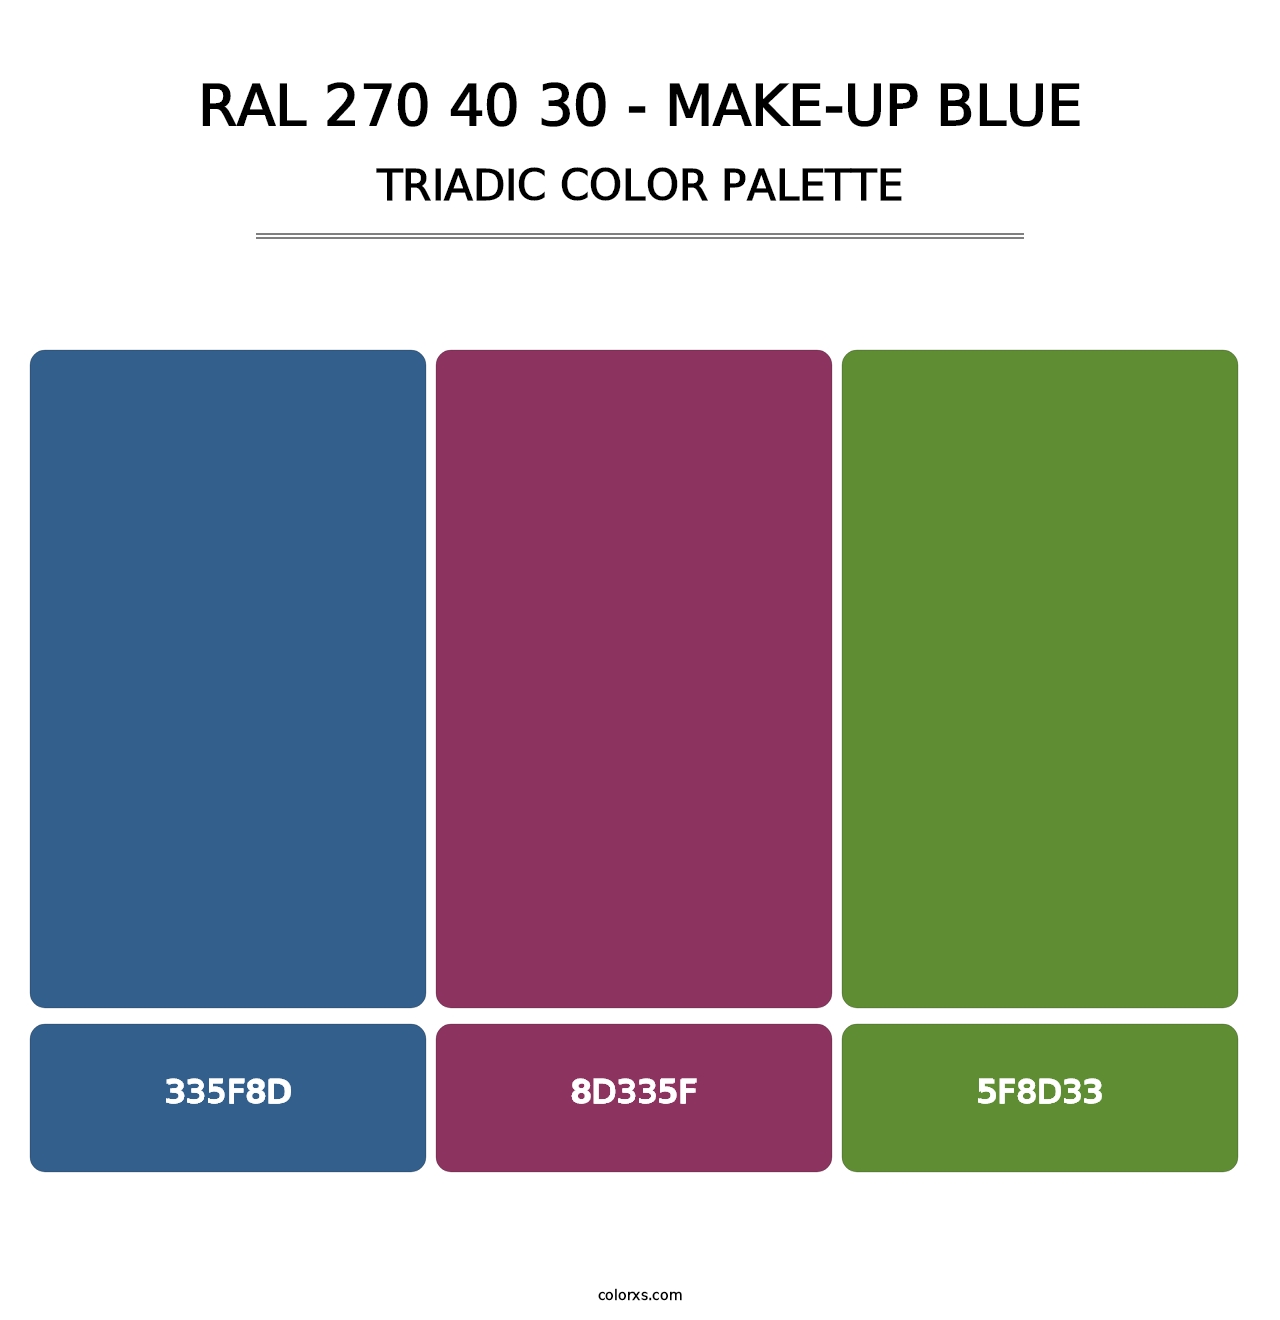 RAL 270 40 30 - Make-Up Blue - Triadic Color Palette